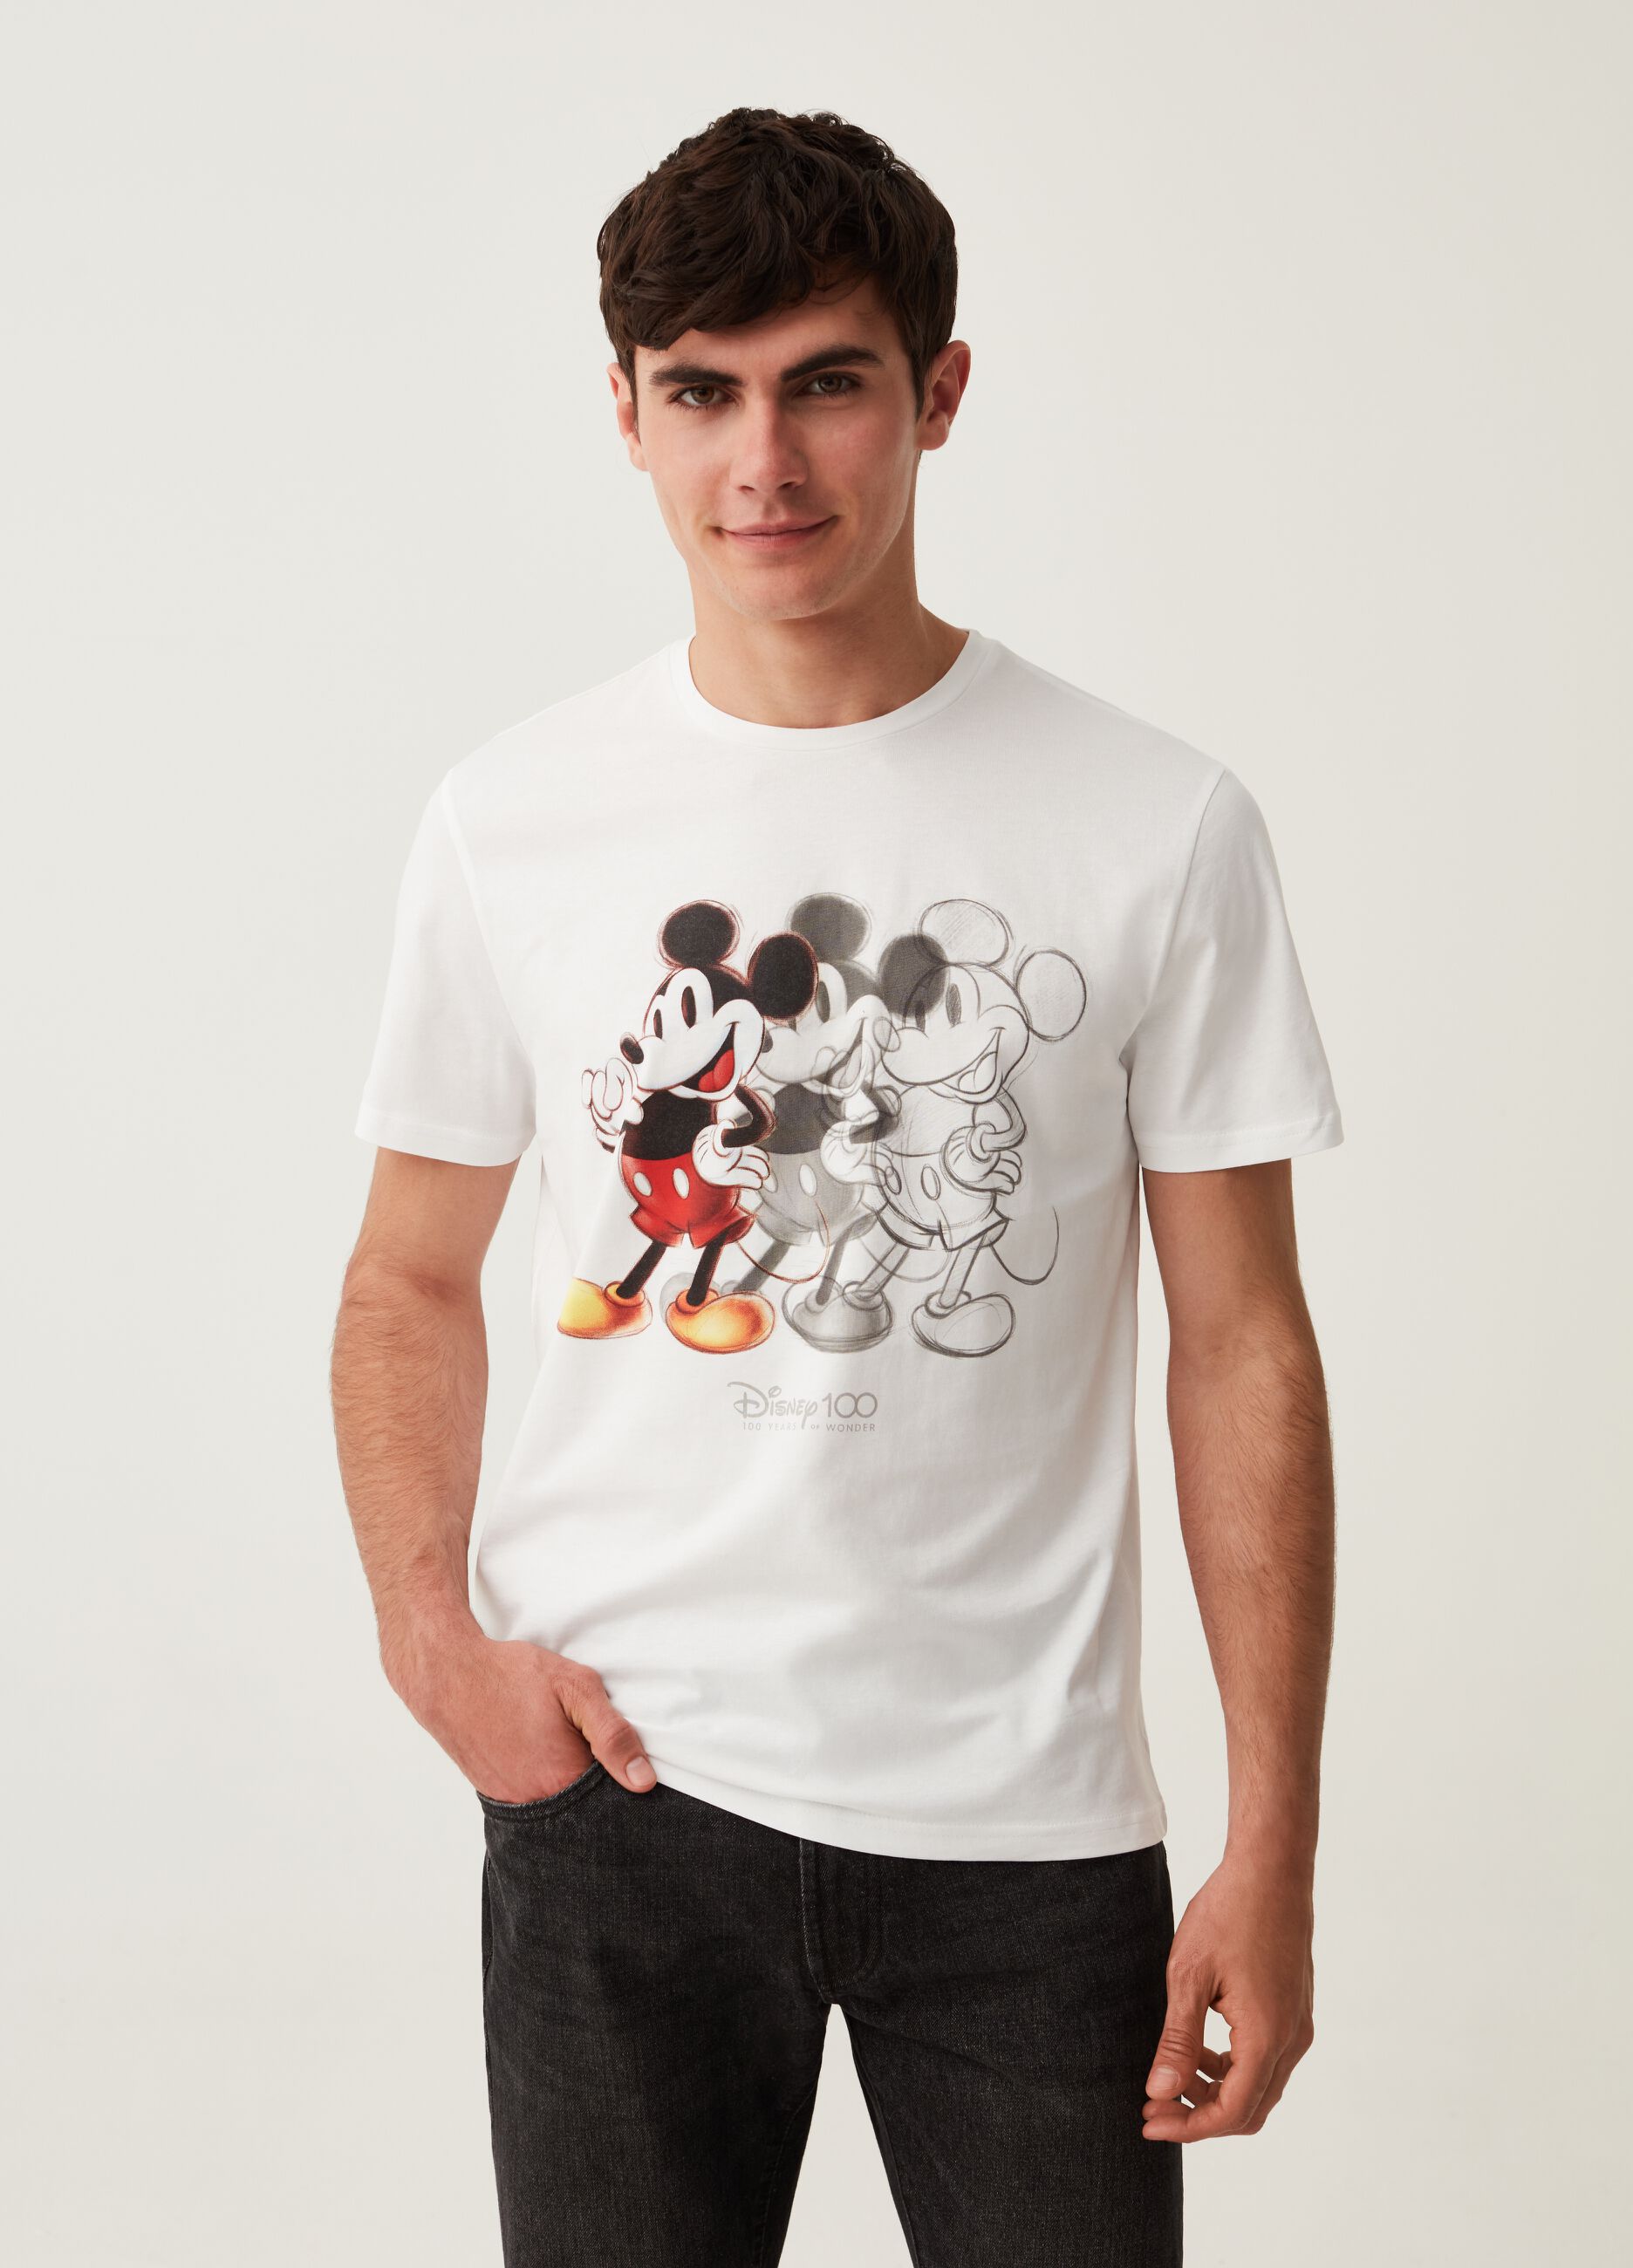 Camiseta de algodón estampado Disney 100° Aniversario